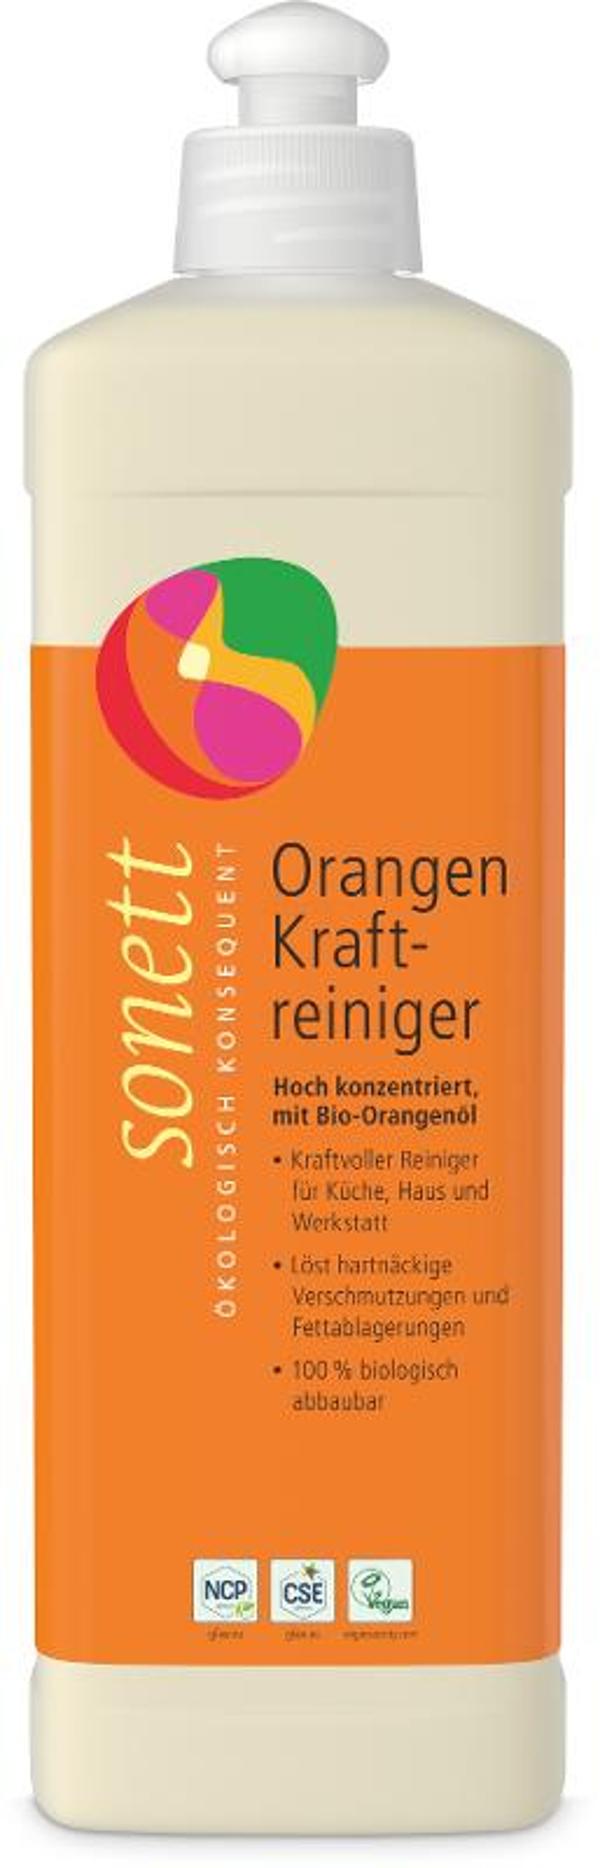 Produktfoto zu Orangen Kraftreiniger, 0,5l